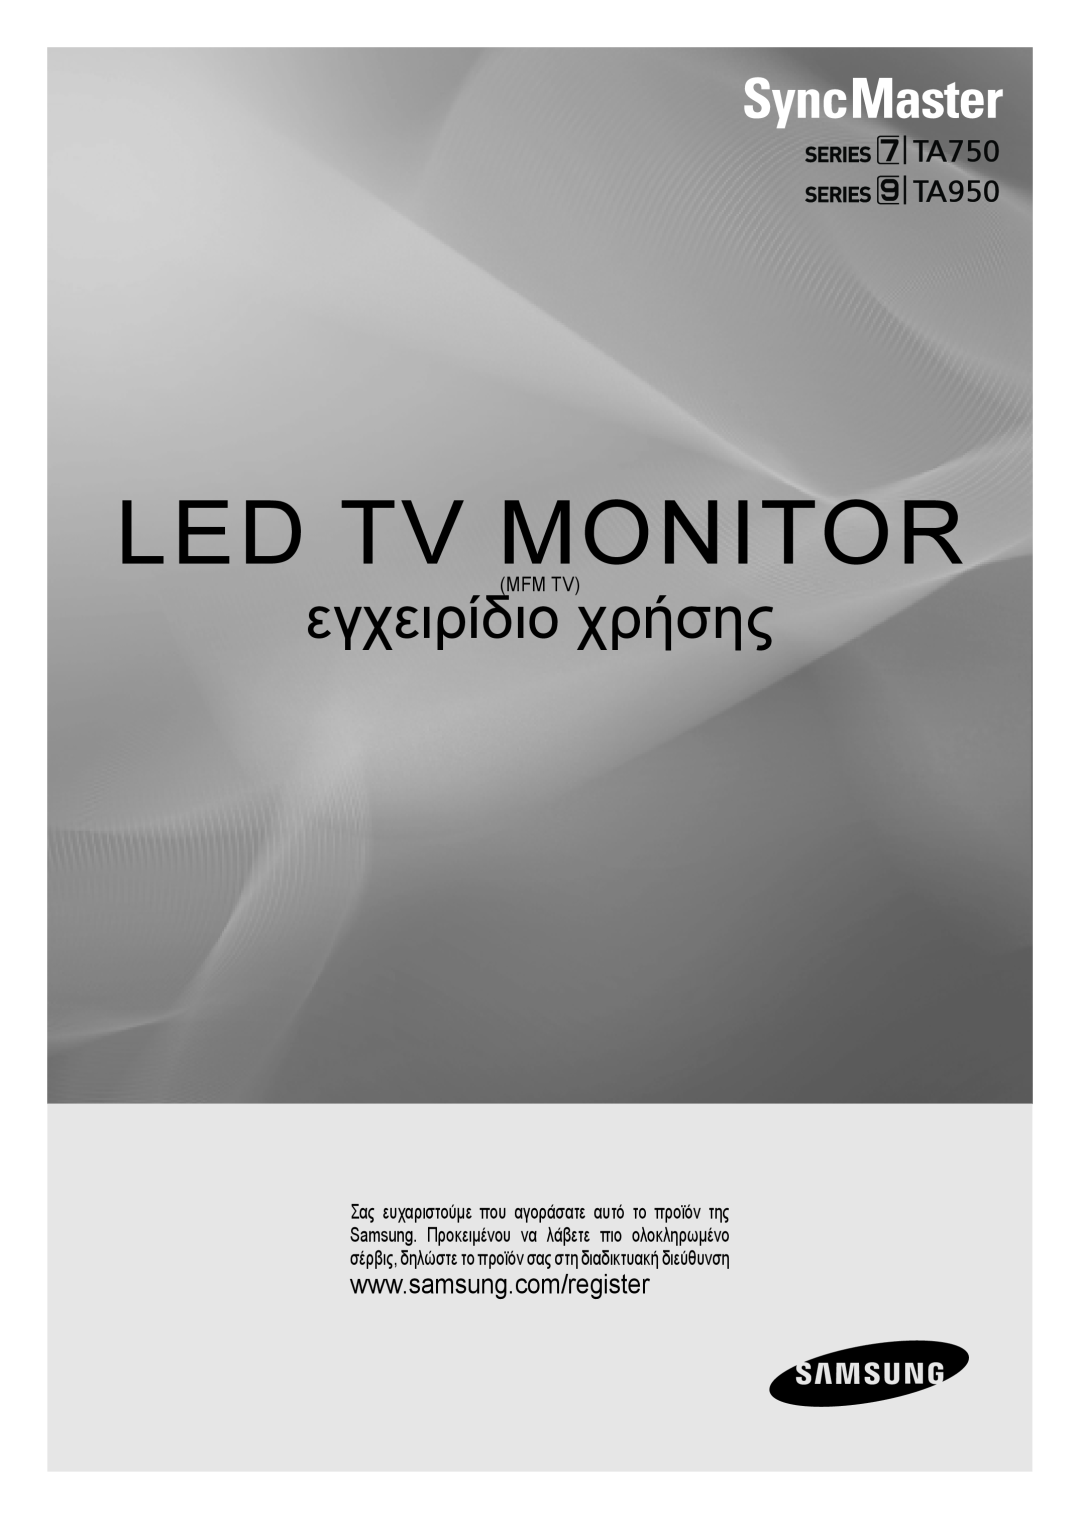 Samsung LT23A750EX/EN, LT27A750EX/EN, LT27A950EX/EN manual Mfm Tv, Led Тв Монитор, ръководство за потребителя, TA750 TA950 